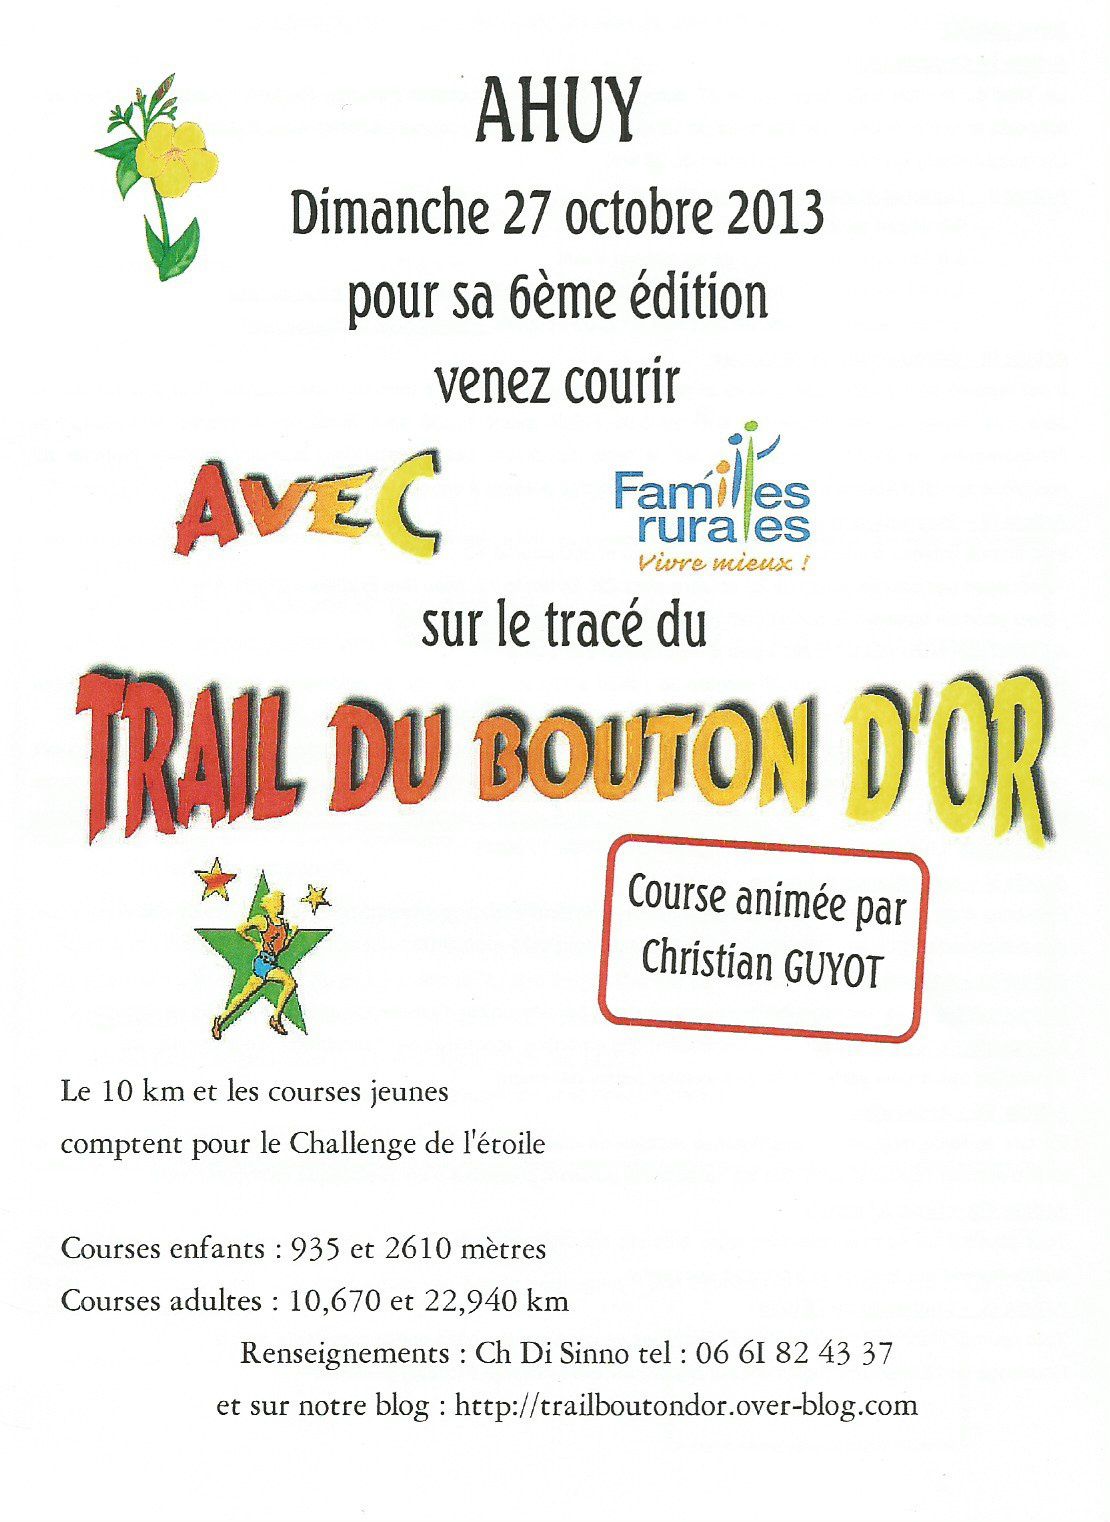 Dimanche 27 octobre 2013 - Trail du Bouton d'Or - Ahuy